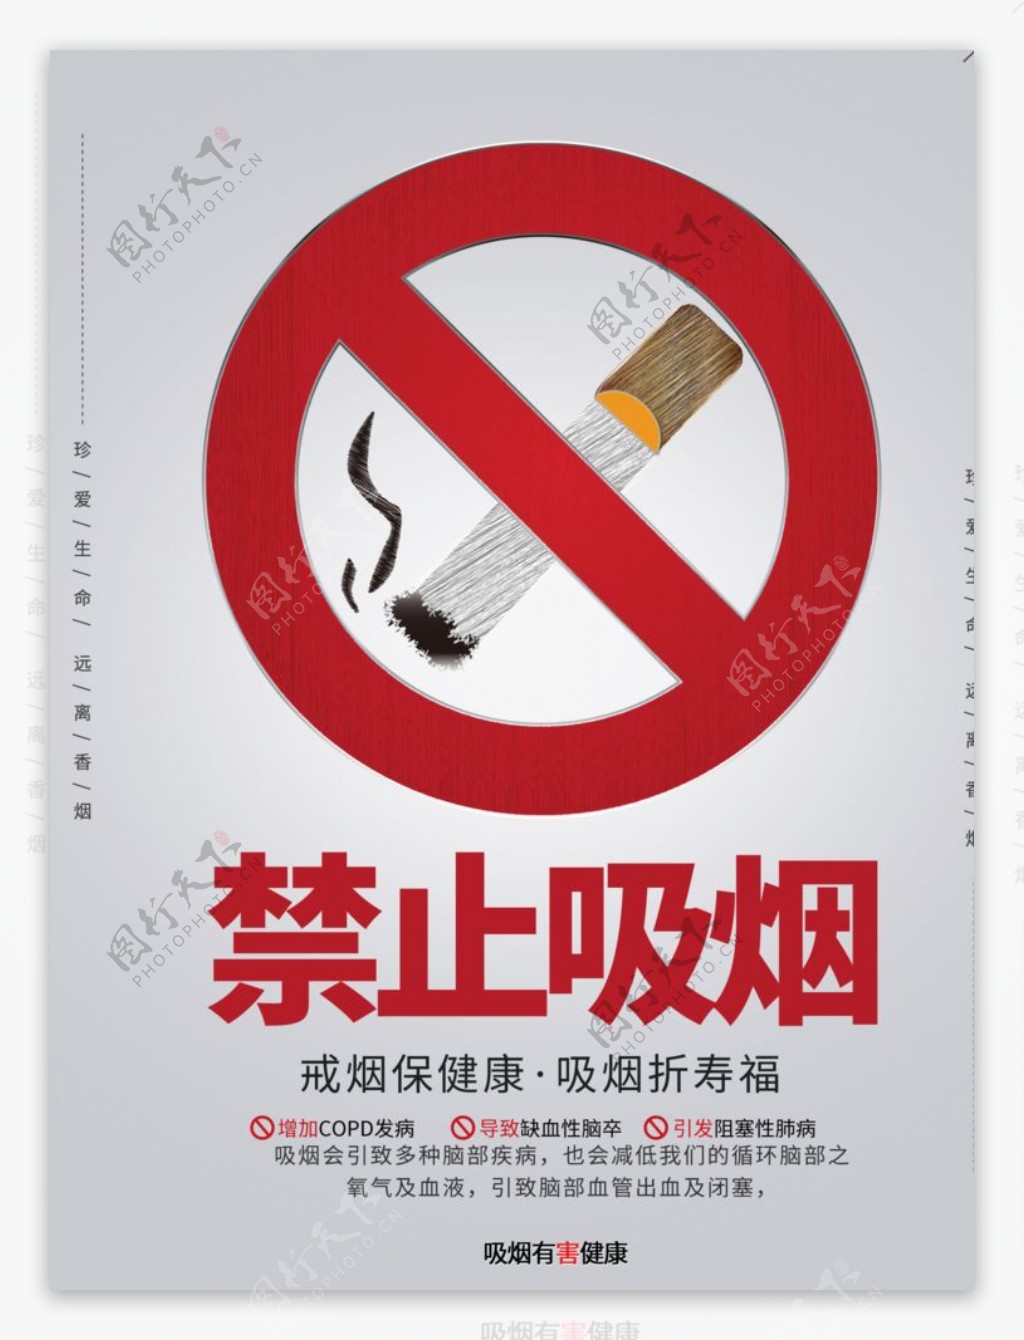 灰色简约风格禁止吸烟公益海报